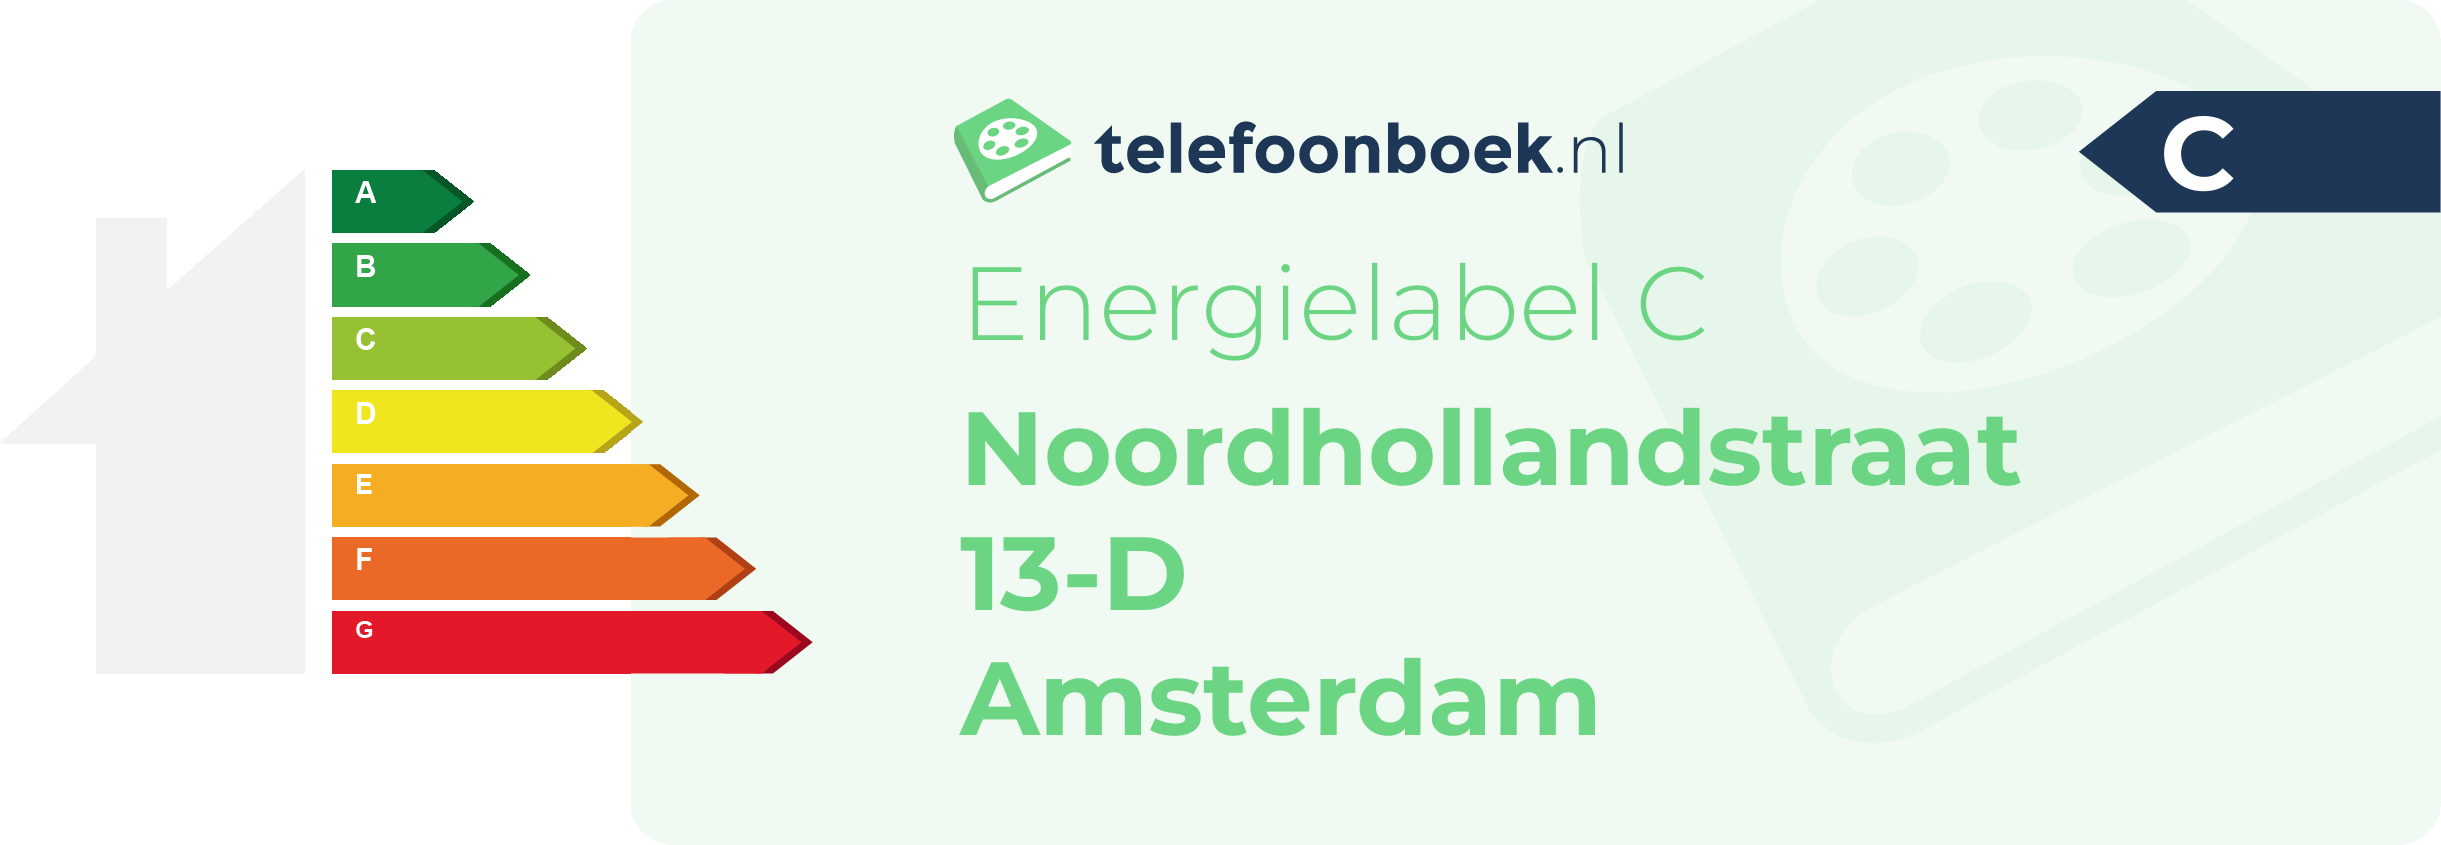 Energielabel Noordhollandstraat 13-D Amsterdam